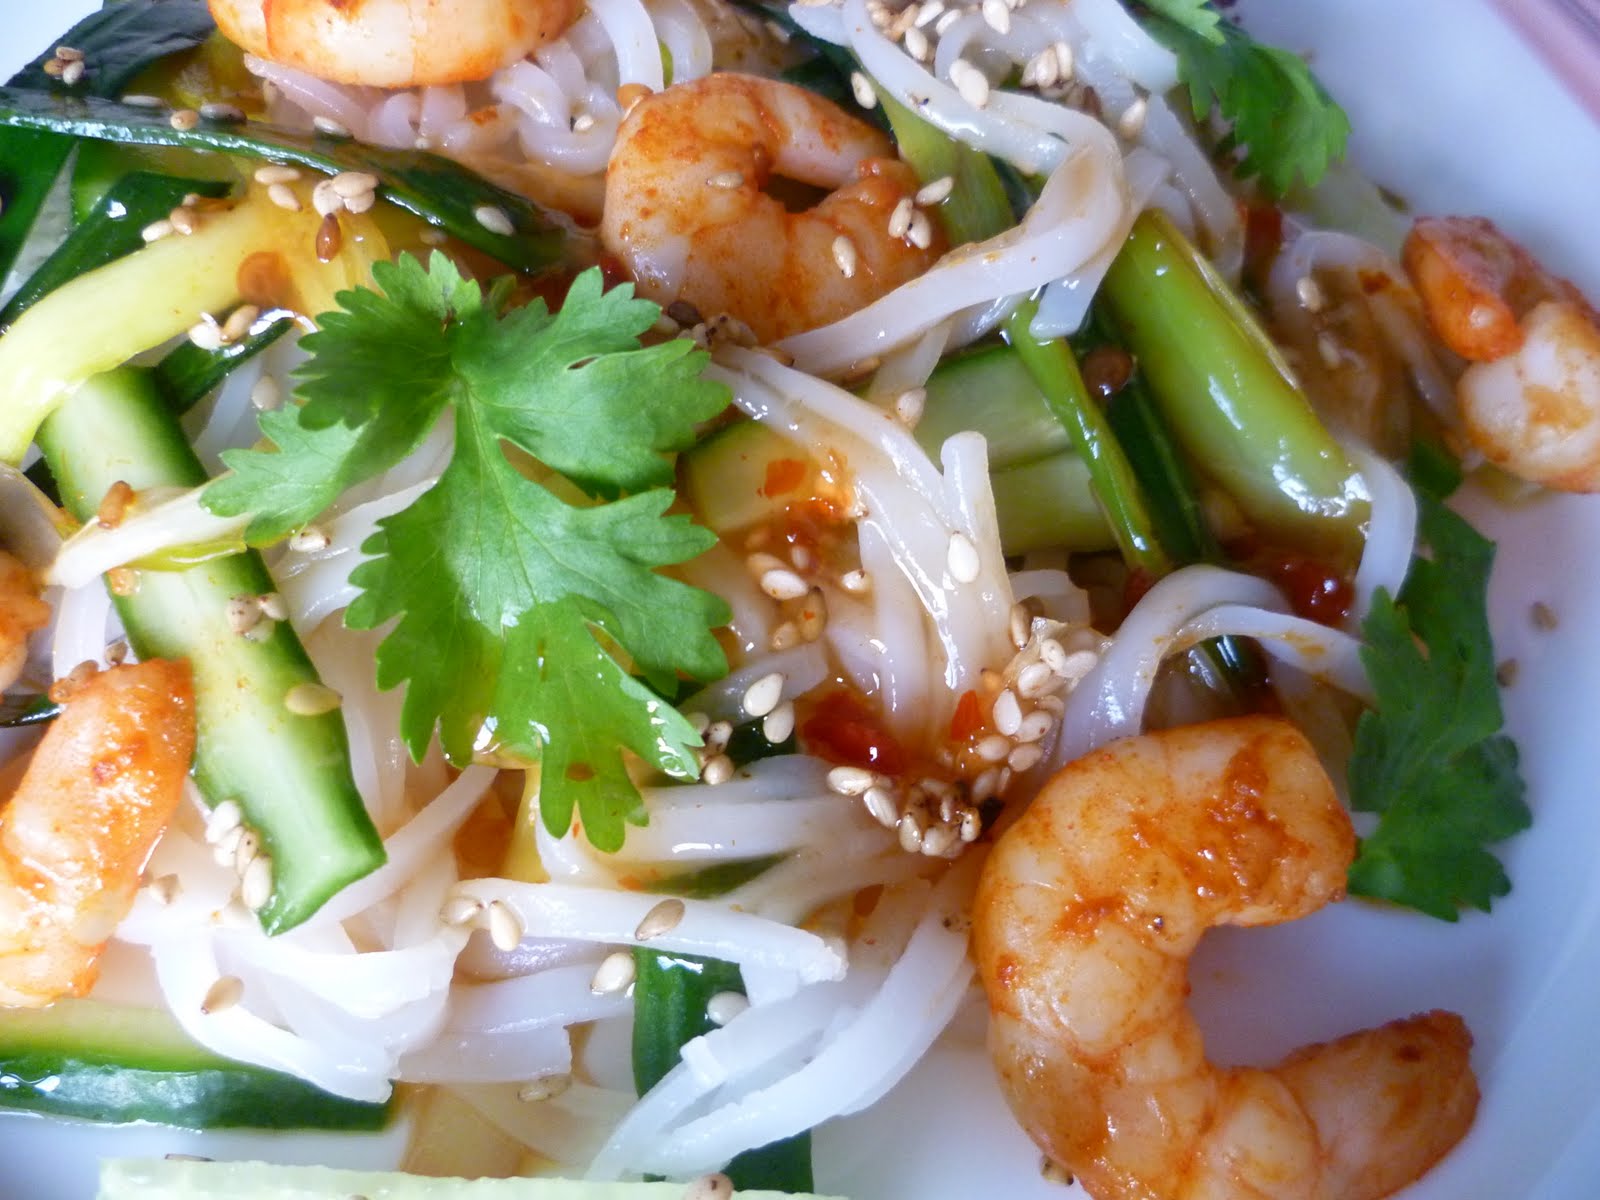 Thailändischer Reisnudelsalat mit Garnelen - Nicest Things